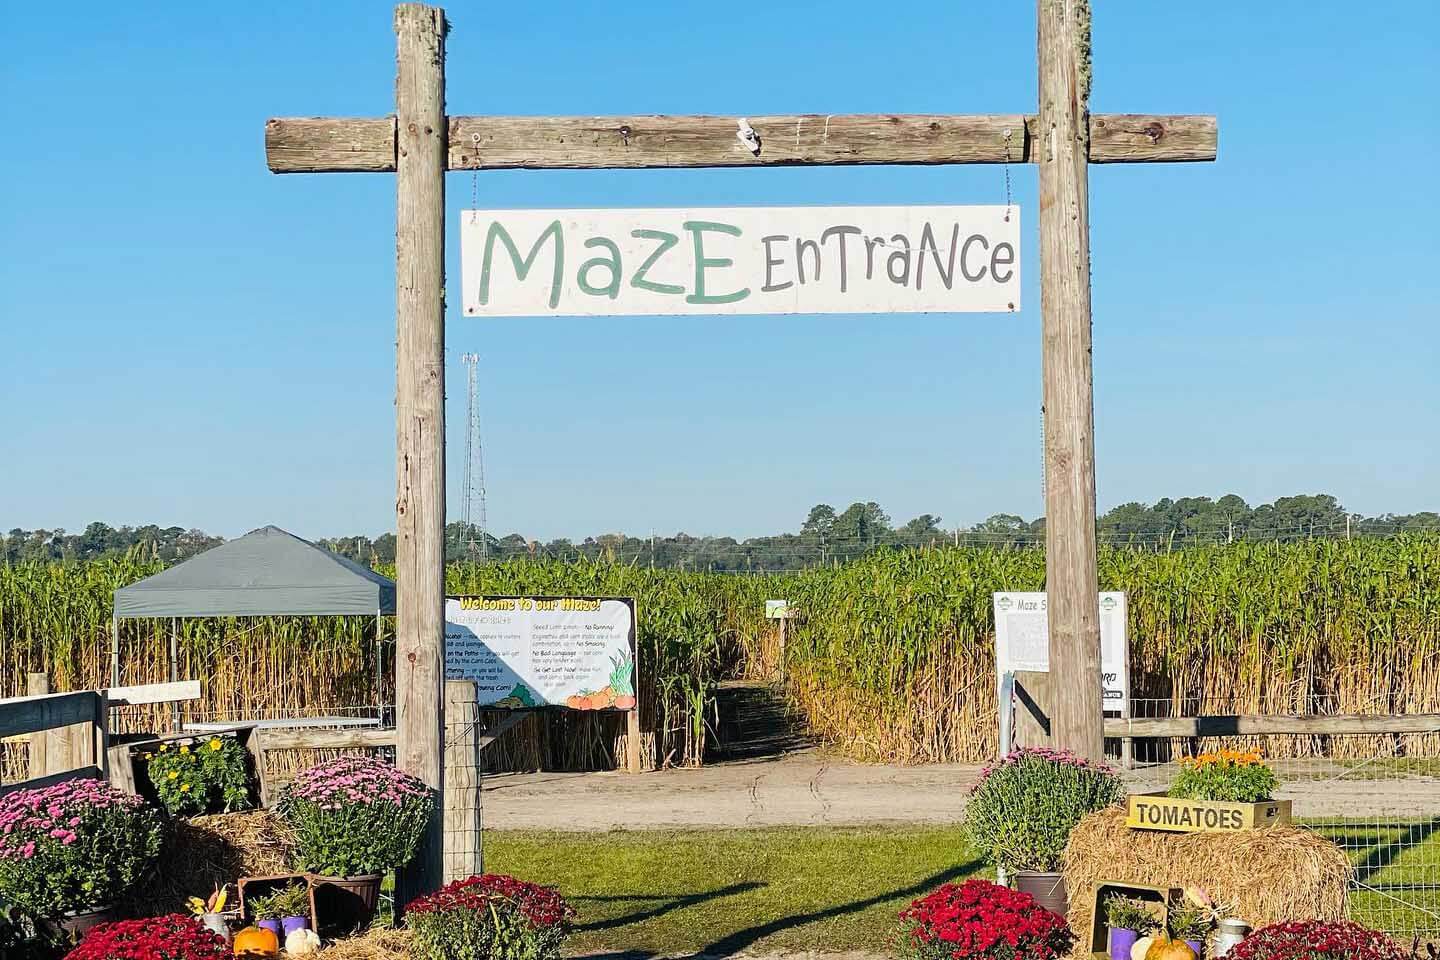 Sykes Family Farms Maze